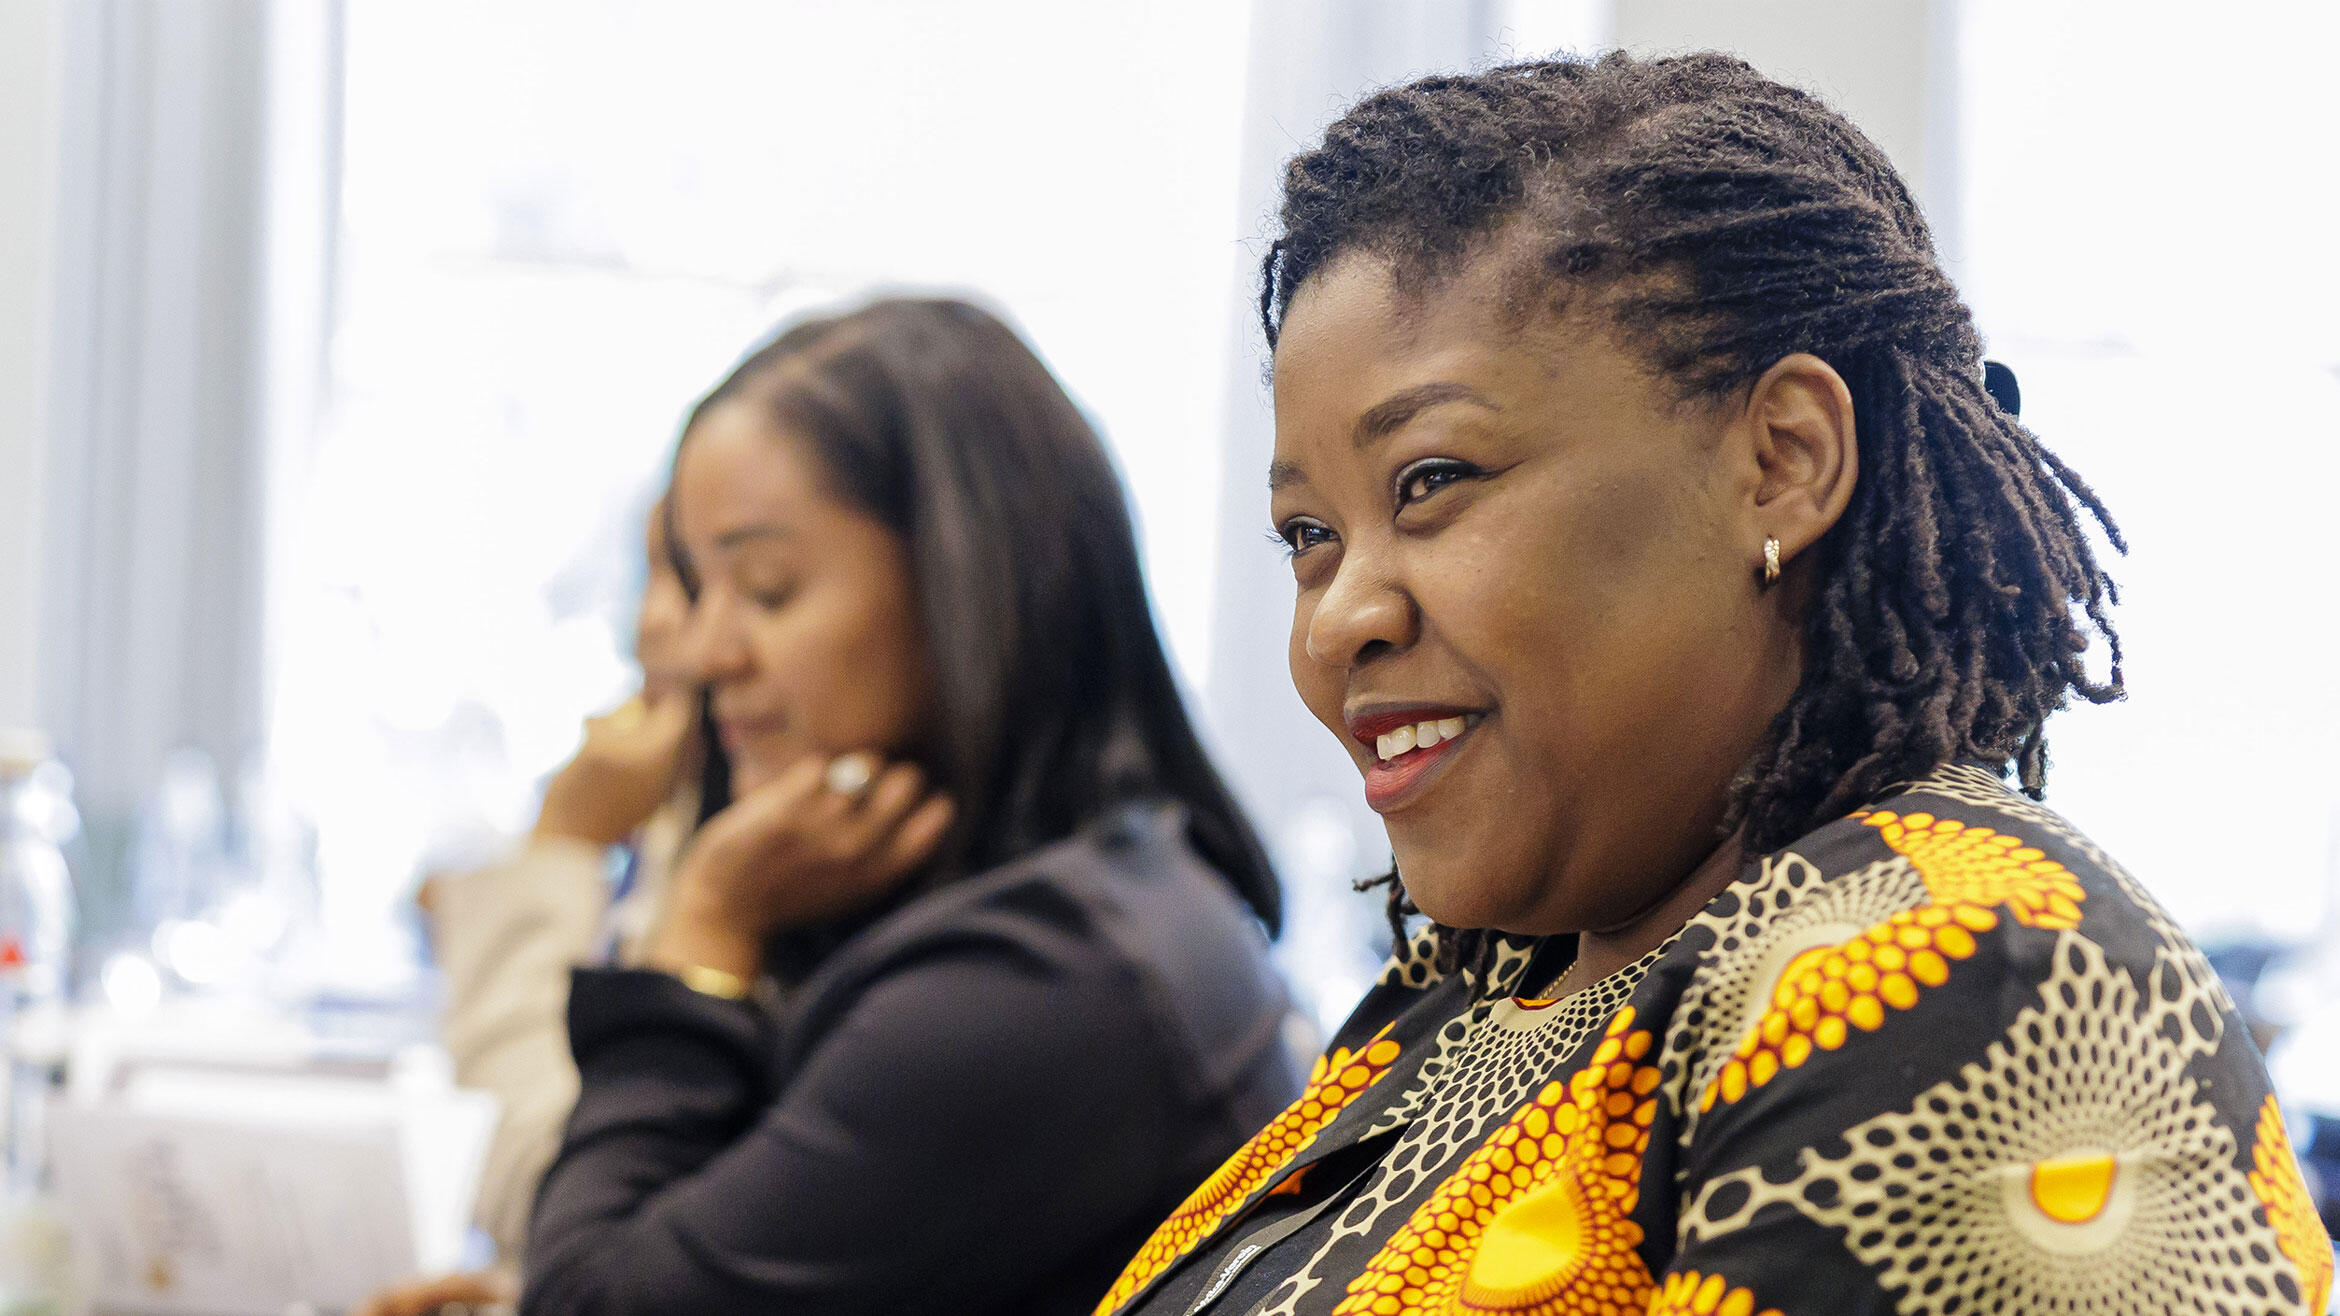 mehrere mutmaßlich afrikanische Frauen beim Afrika Bildungsforum 2022 sitzen in einer Reihe, die vordere Frau lächelt